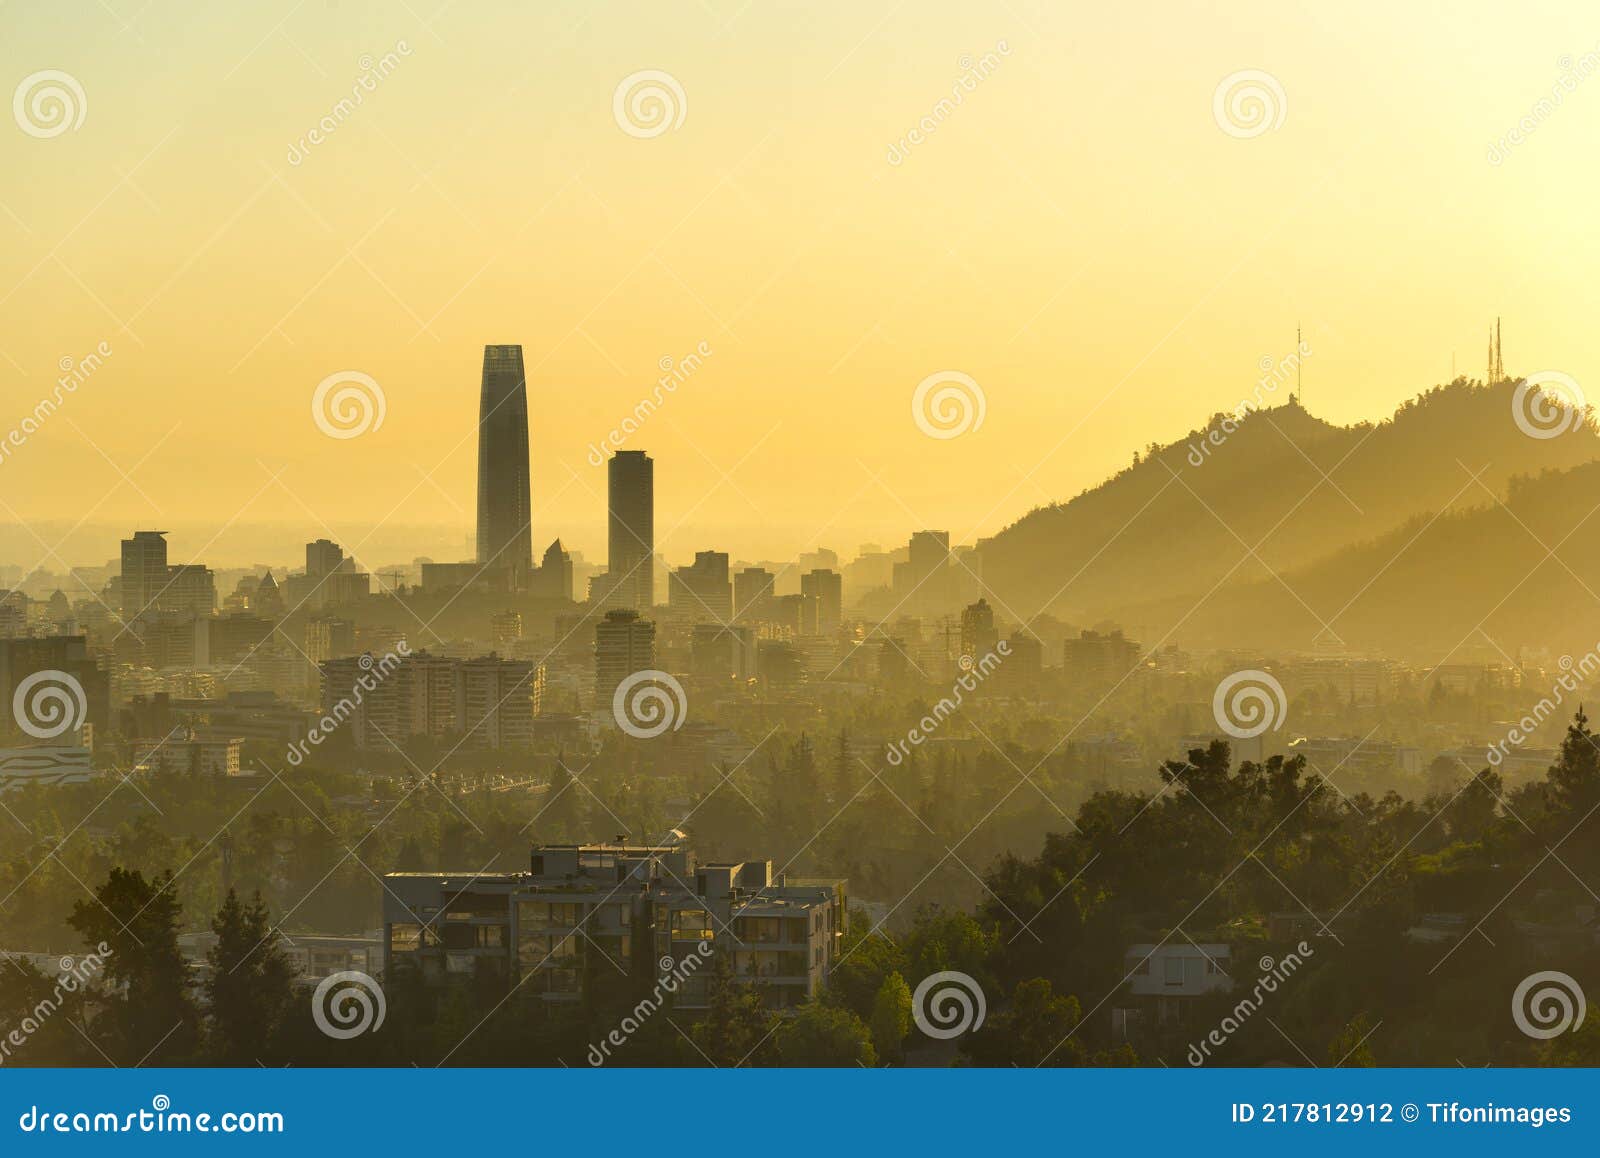 cityscape of santiago de chile